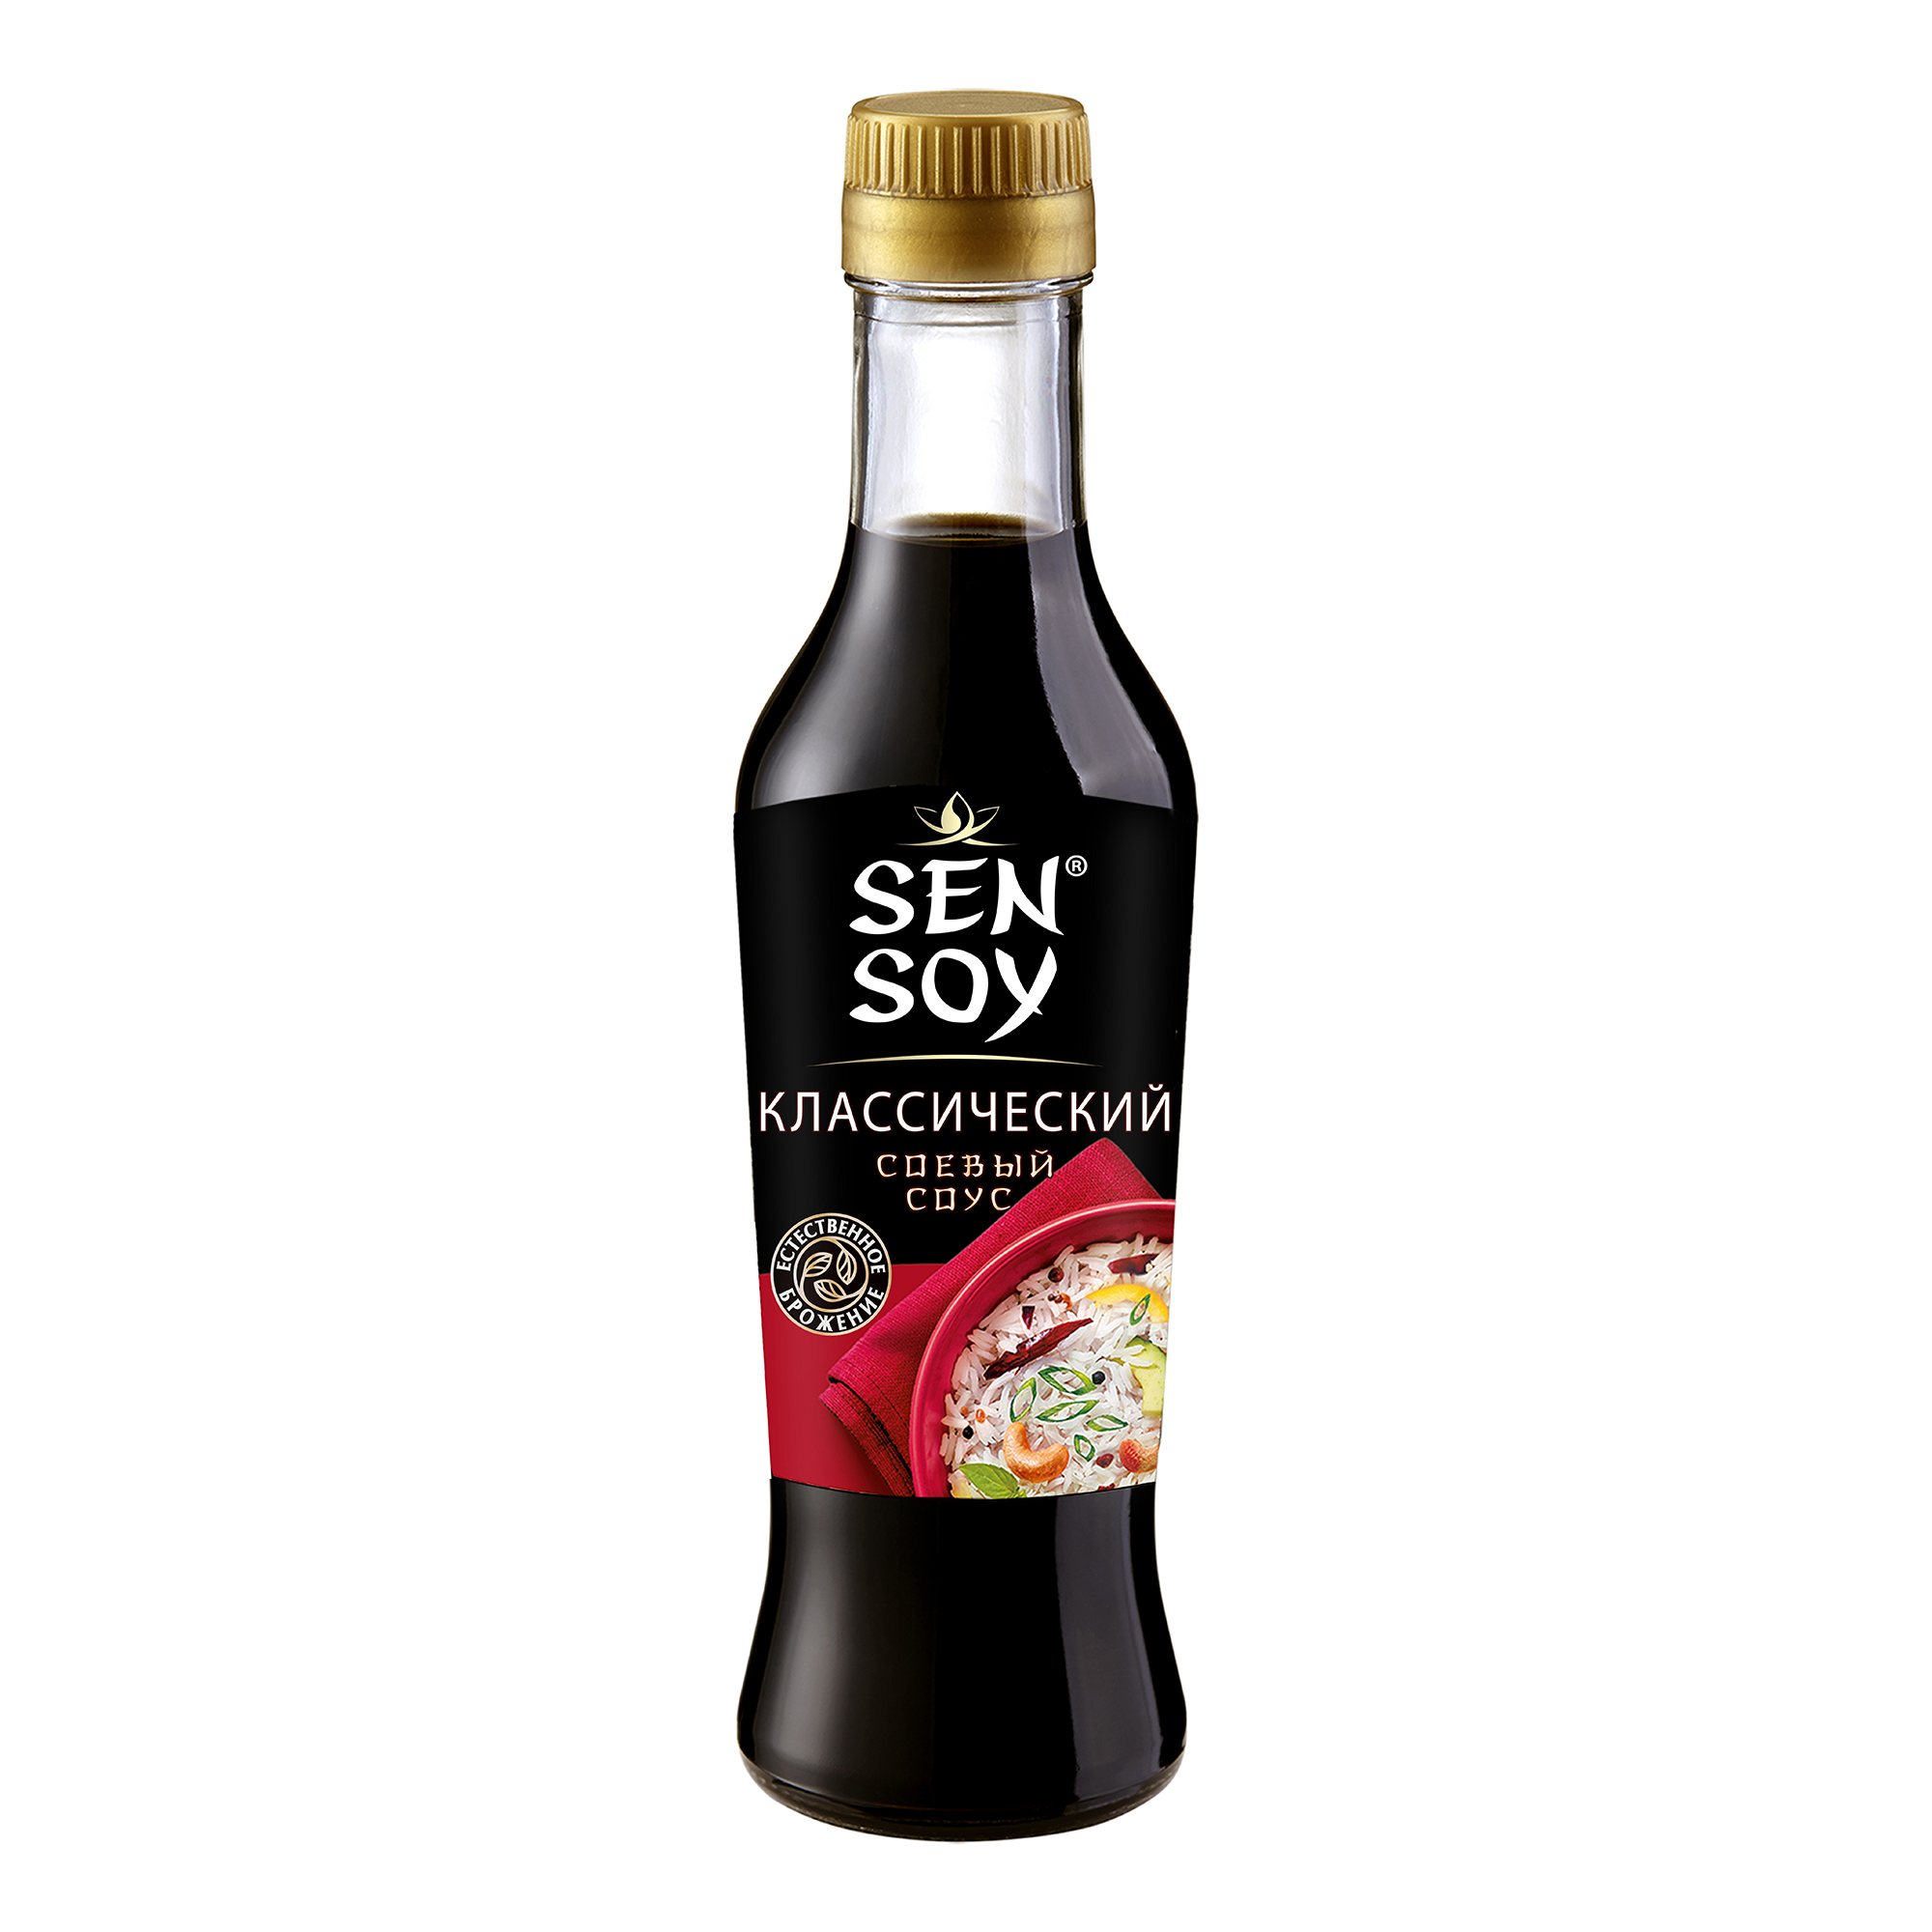 Sen soy соевый соус для суши отзывы (120) фото